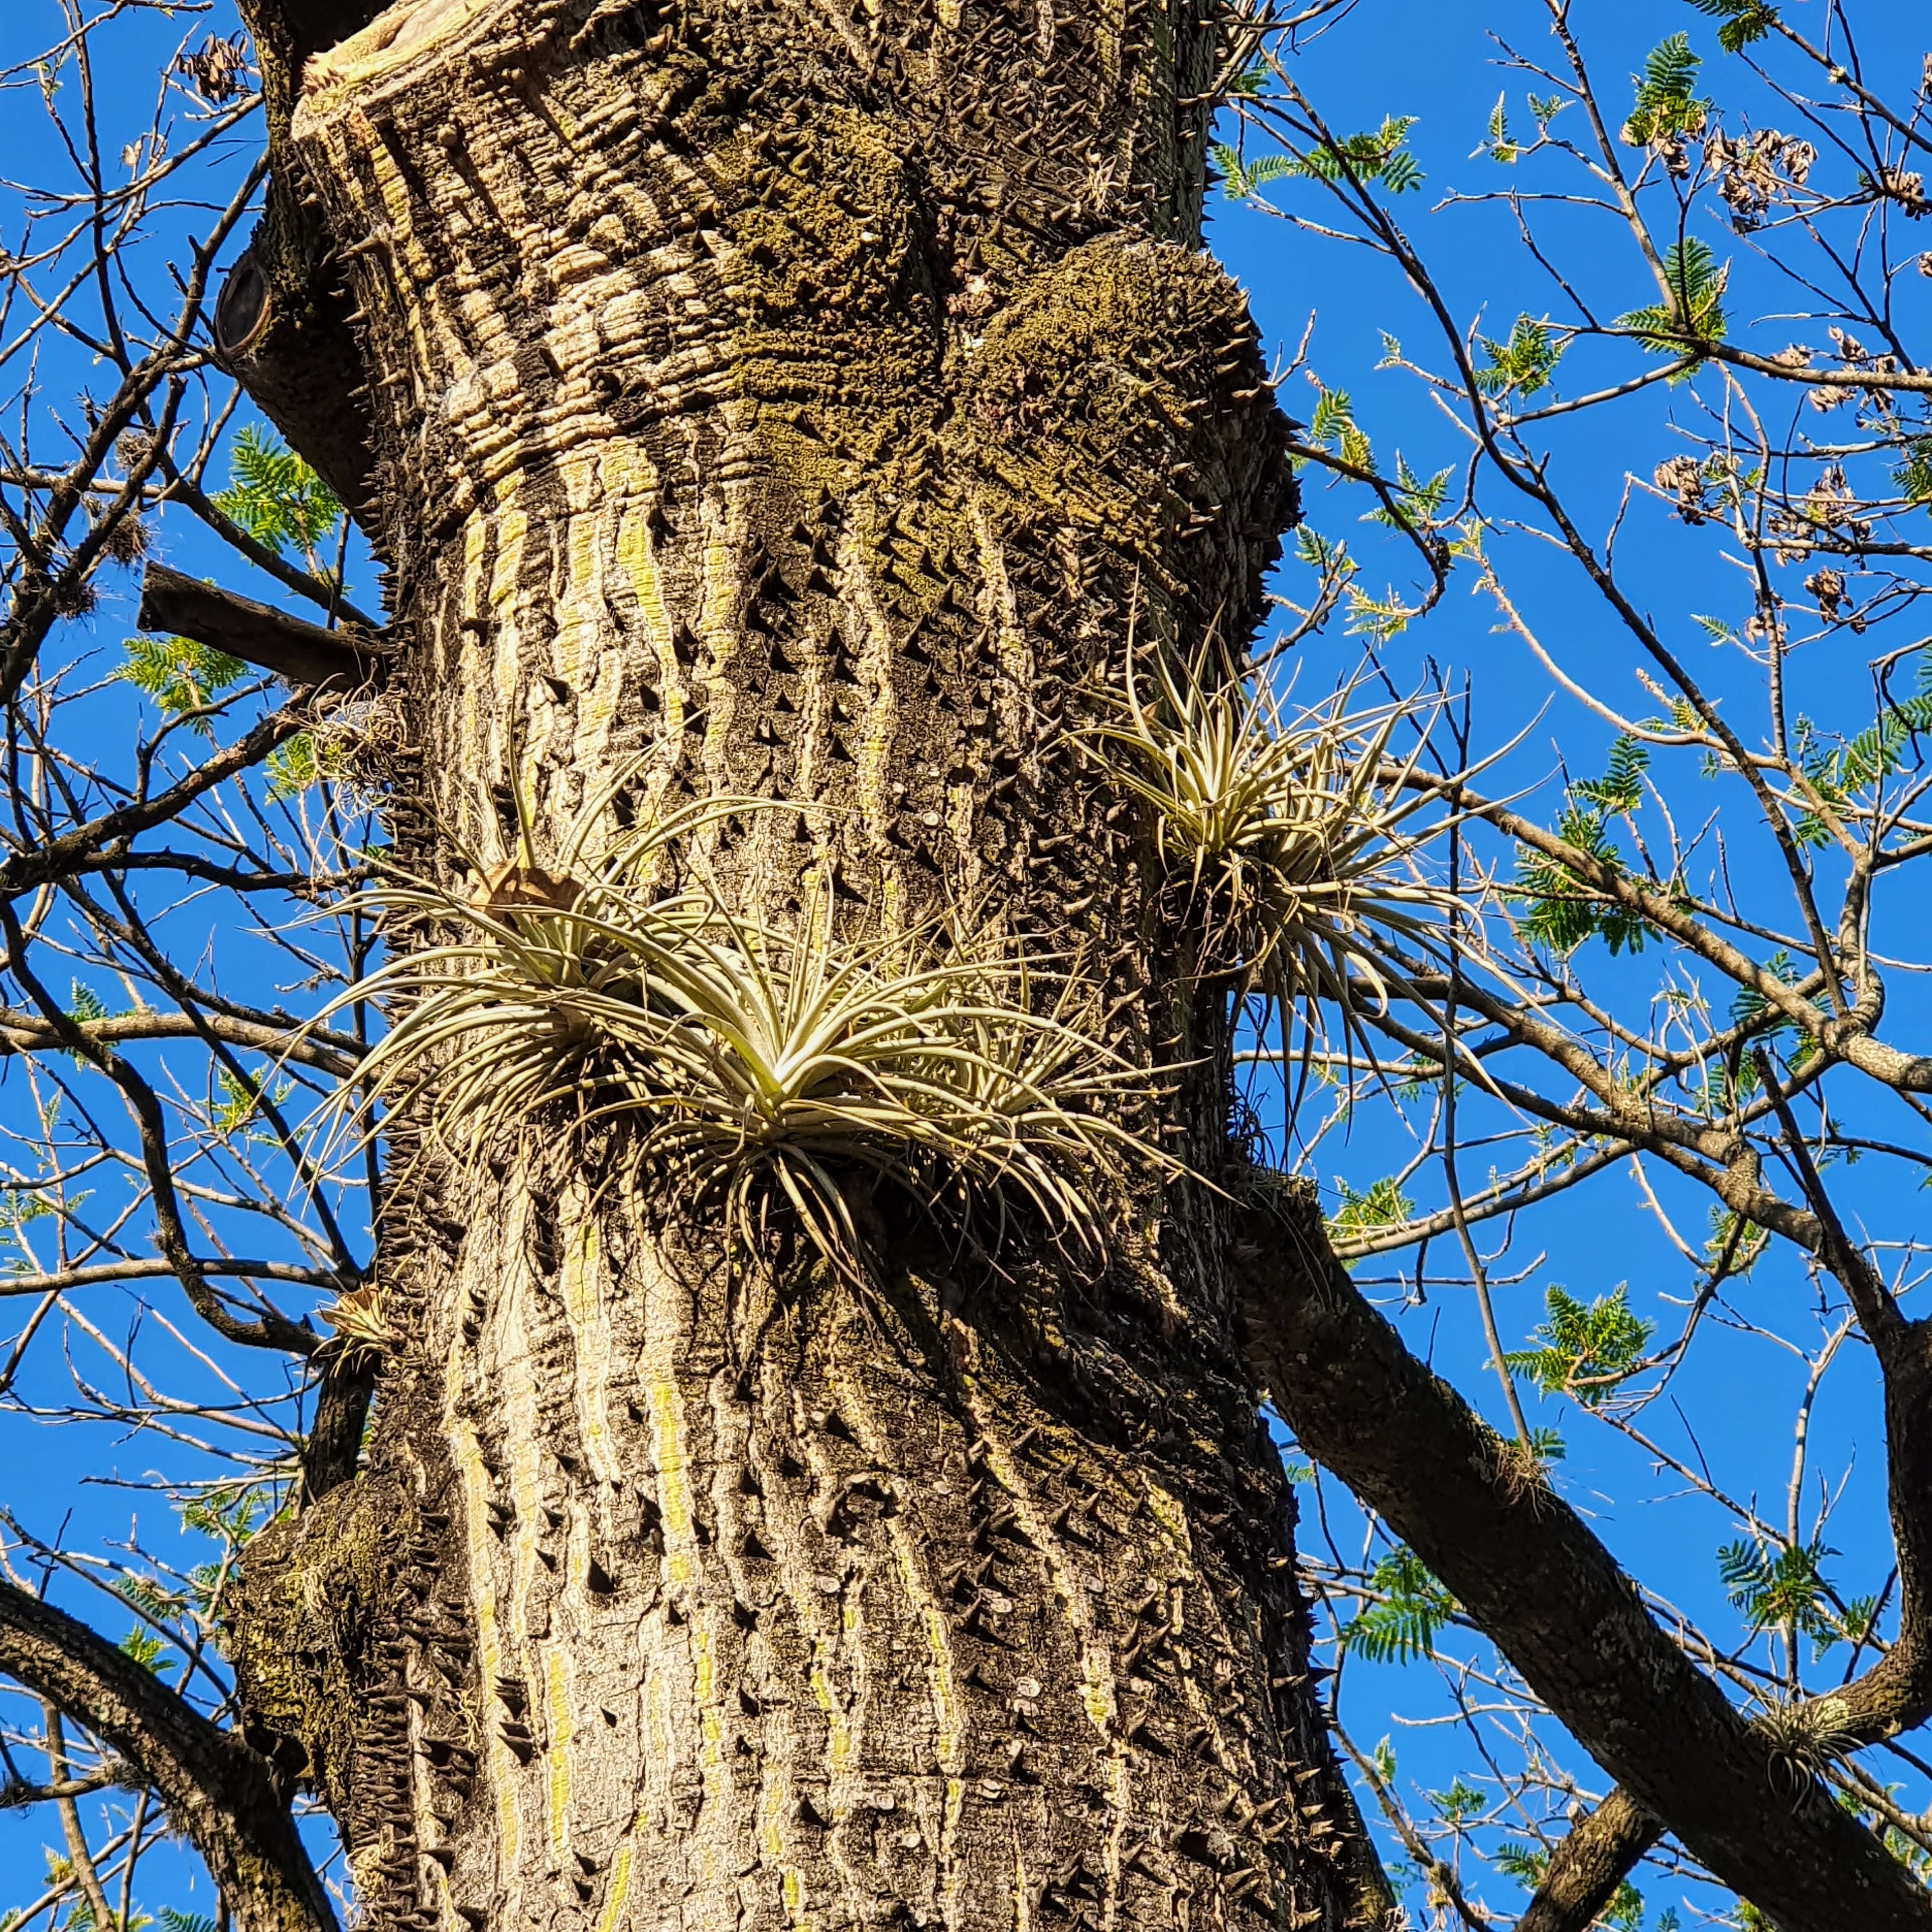 Tilândsias em árvore de Erythrina sp.